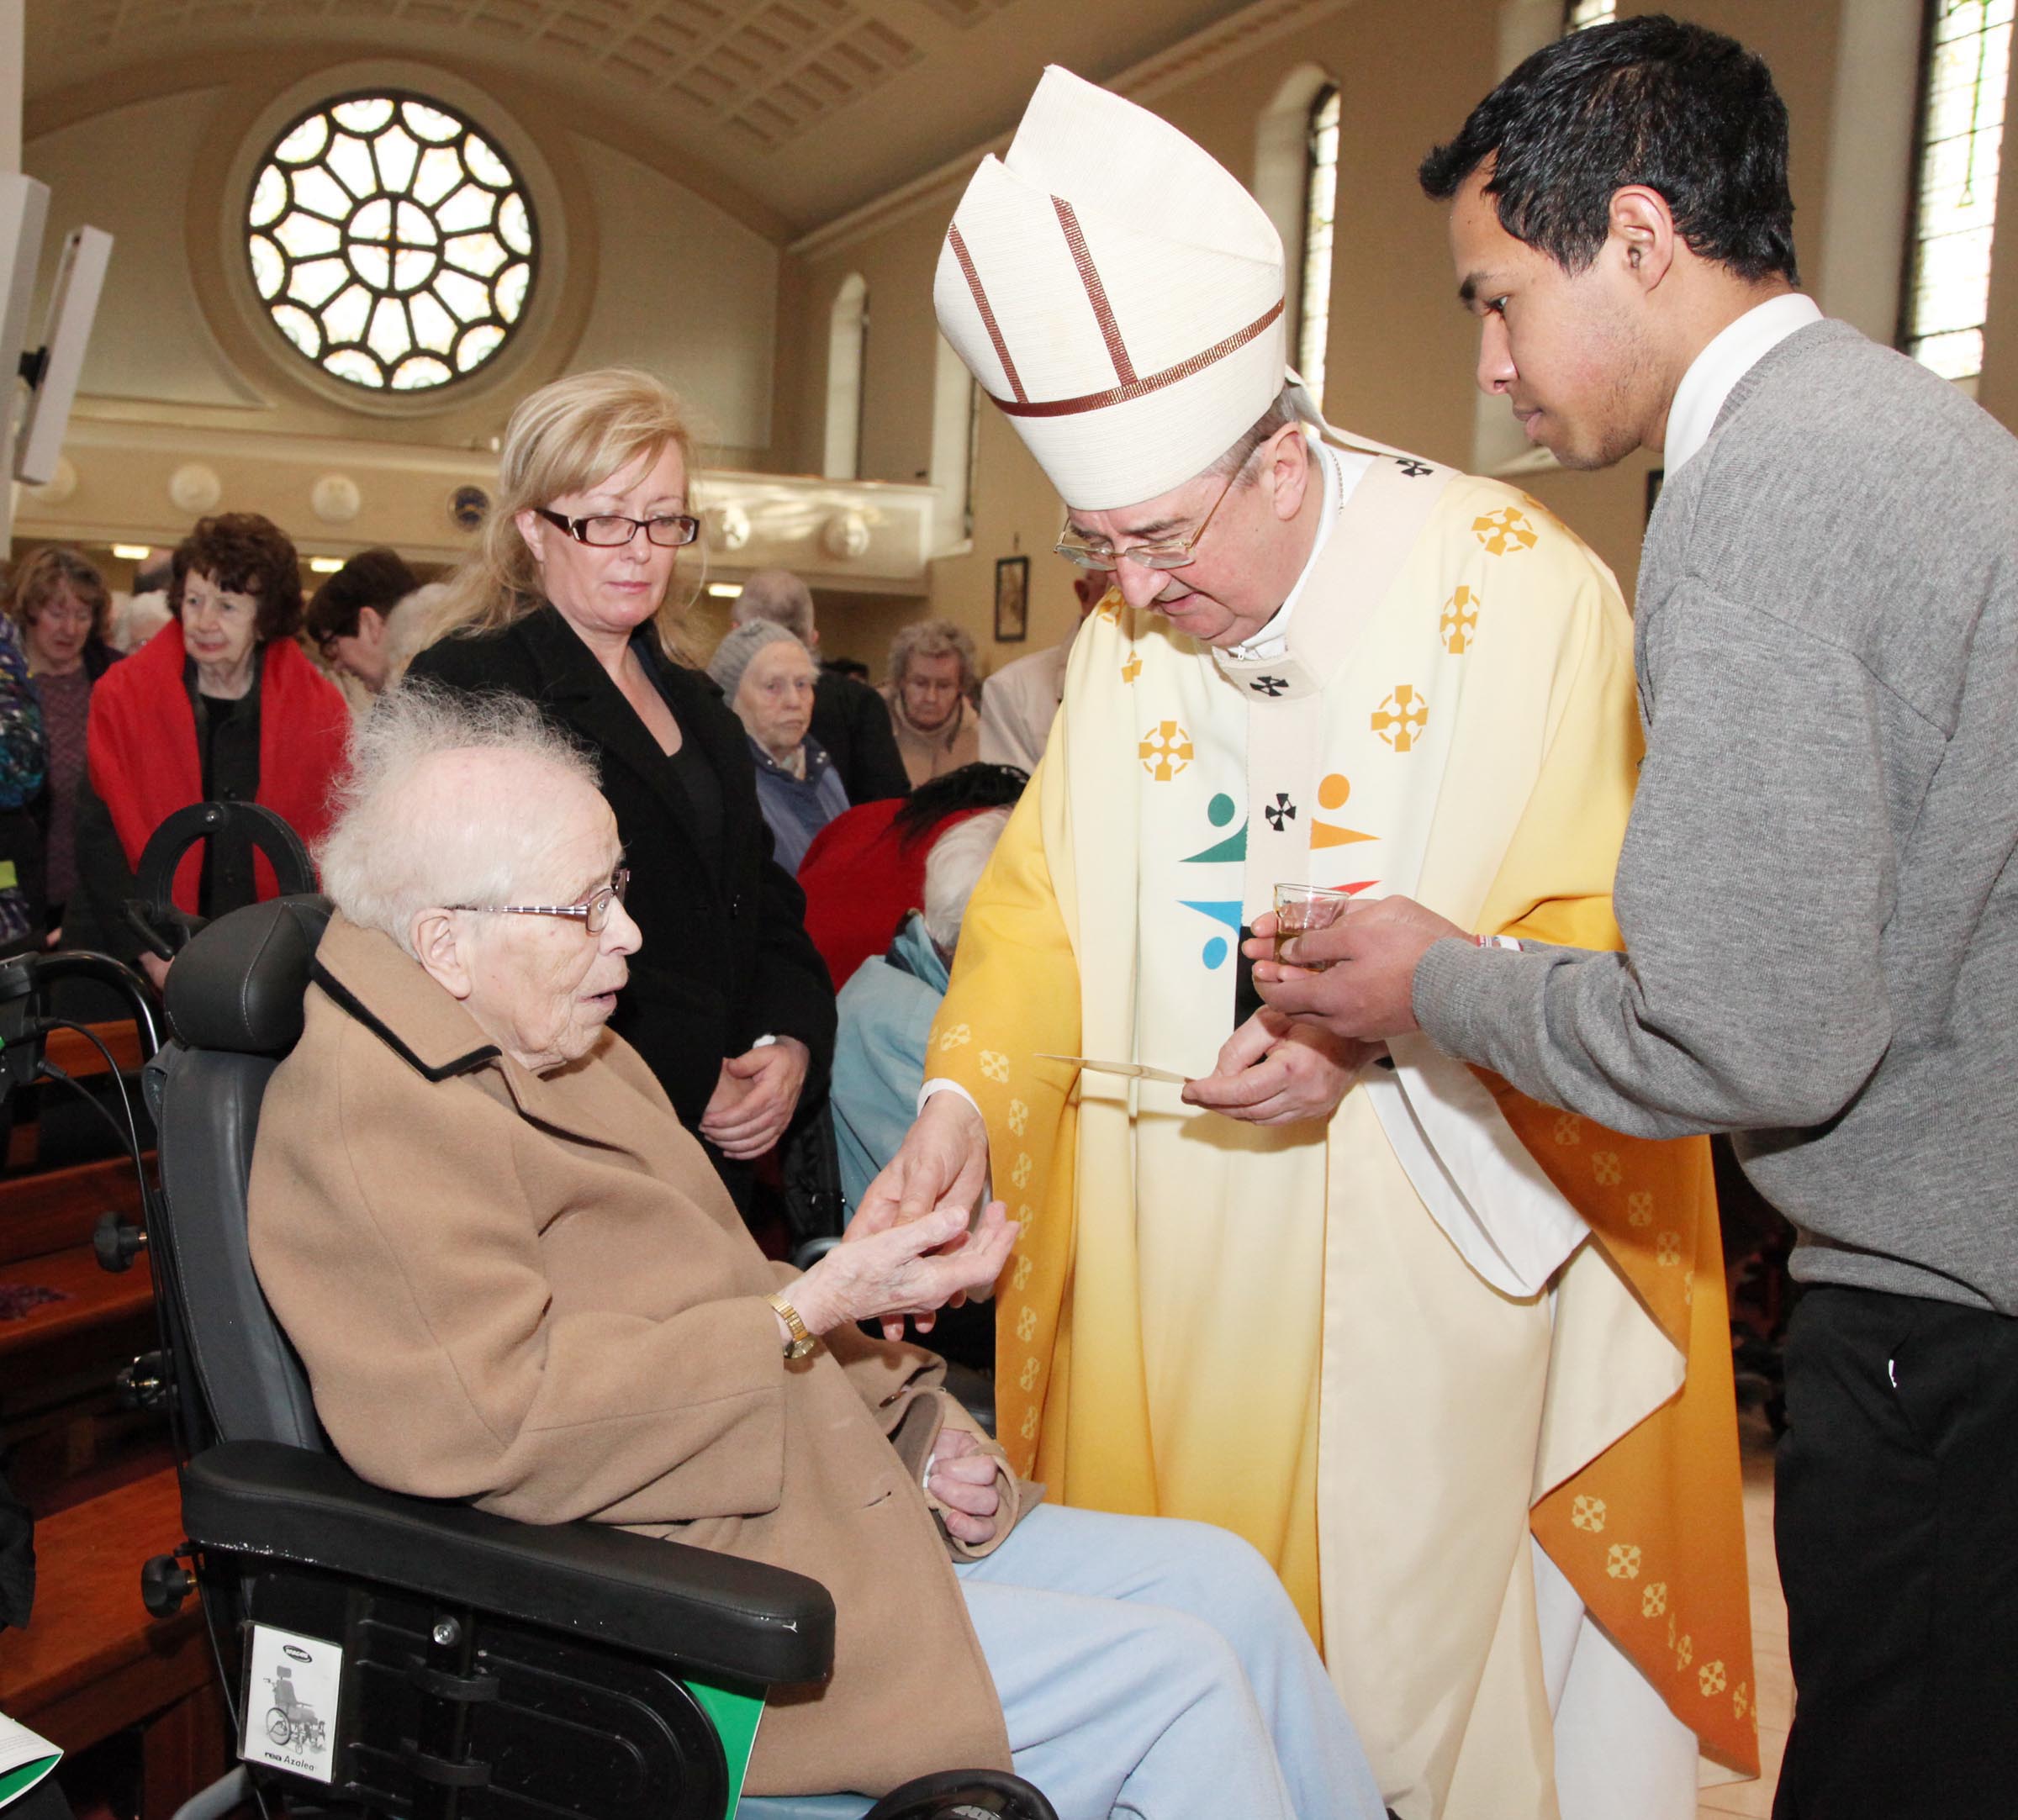 Rol de la comunidad en el cuidado de los enfermos: Arzobispo